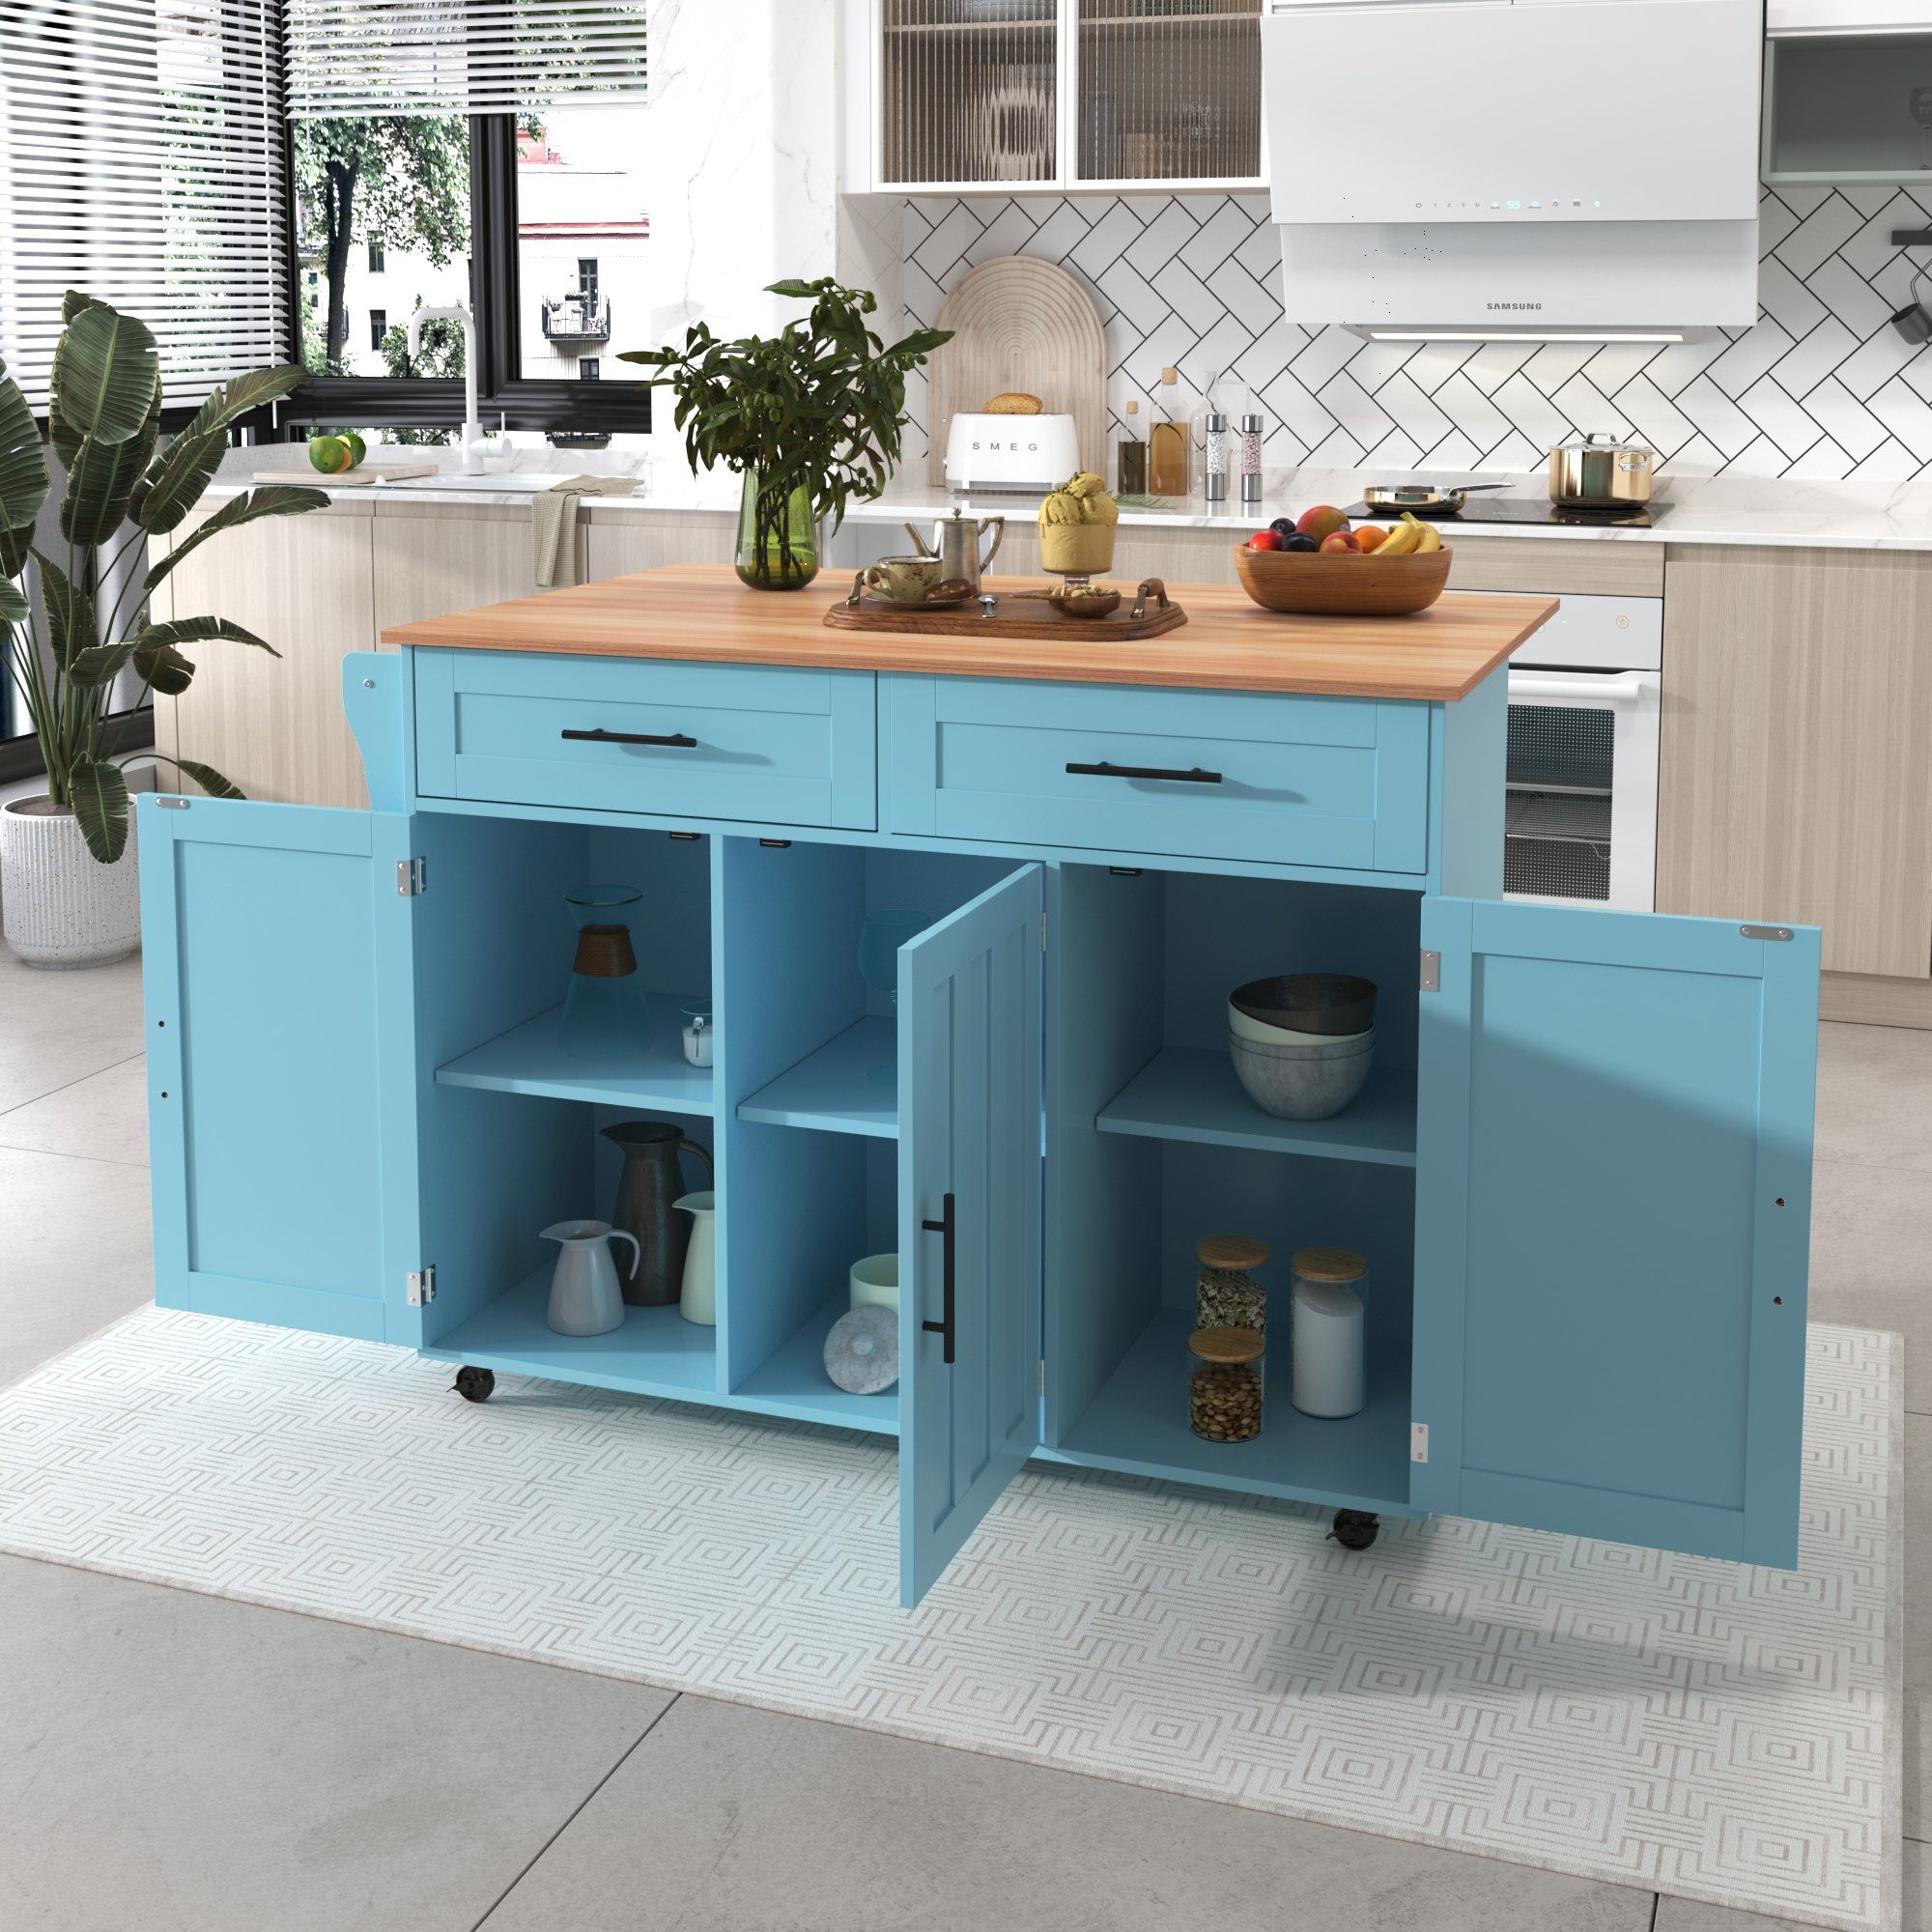 GLIESE Küchenbuffet Esstischwagen / Anrichte mit Klapptischplatte Blau